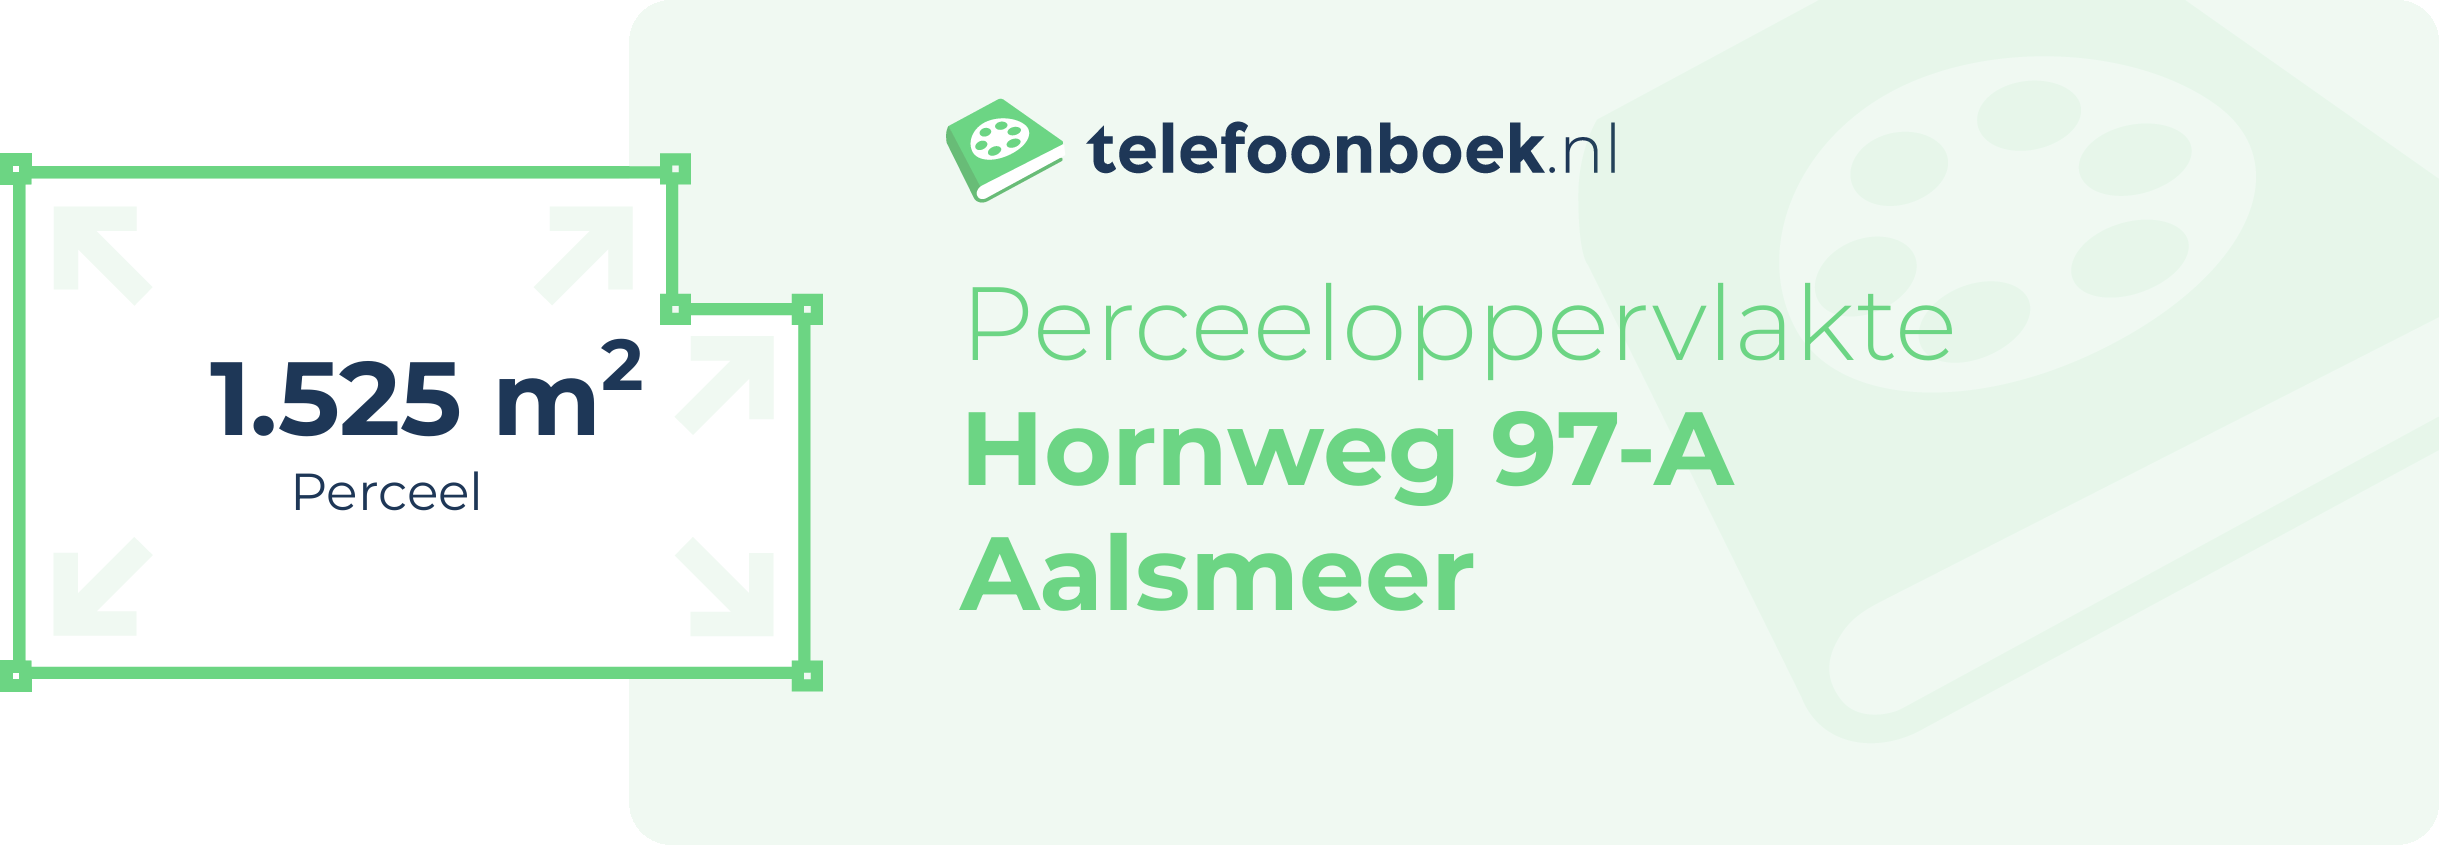 Perceeloppervlakte Hornweg 97-A Aalsmeer